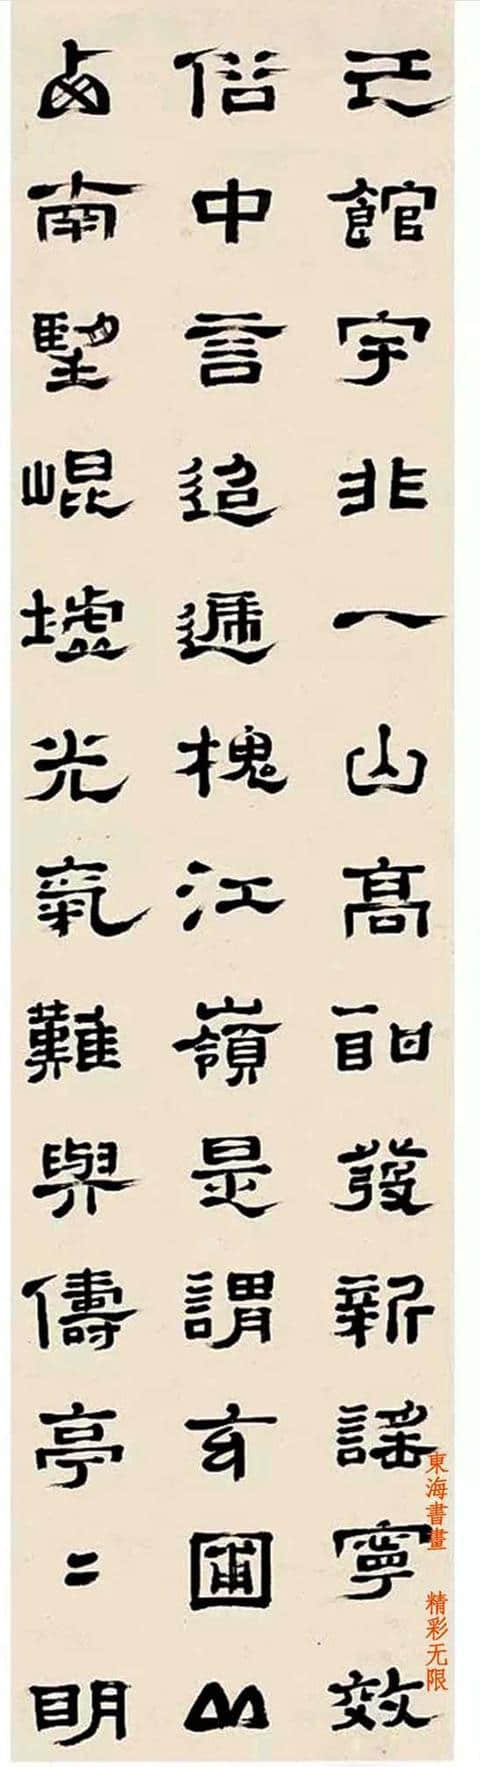 郑簠1669年作 隶书录《陶潜读山海经诗》十二屏